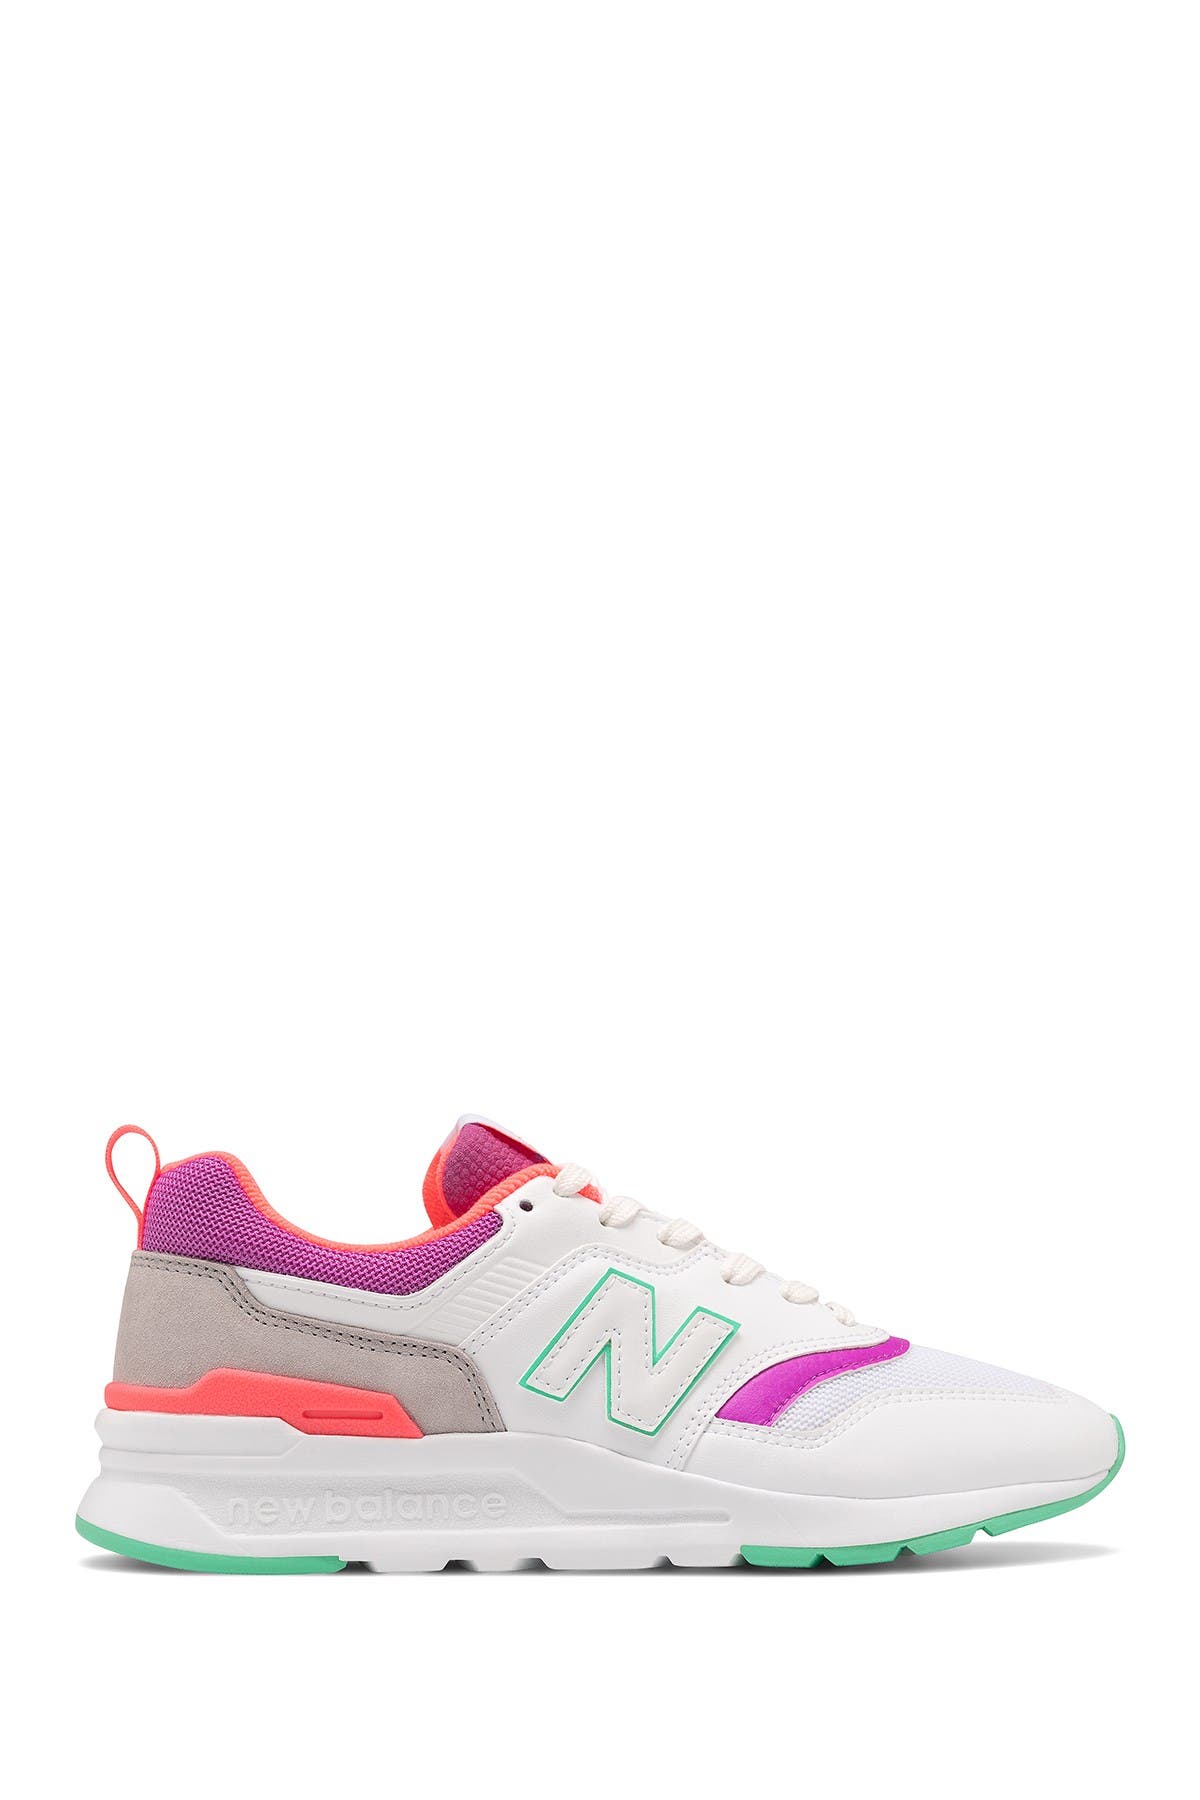 New Balance | 997hv1 Casual Sneaker | Nordstrom Rack